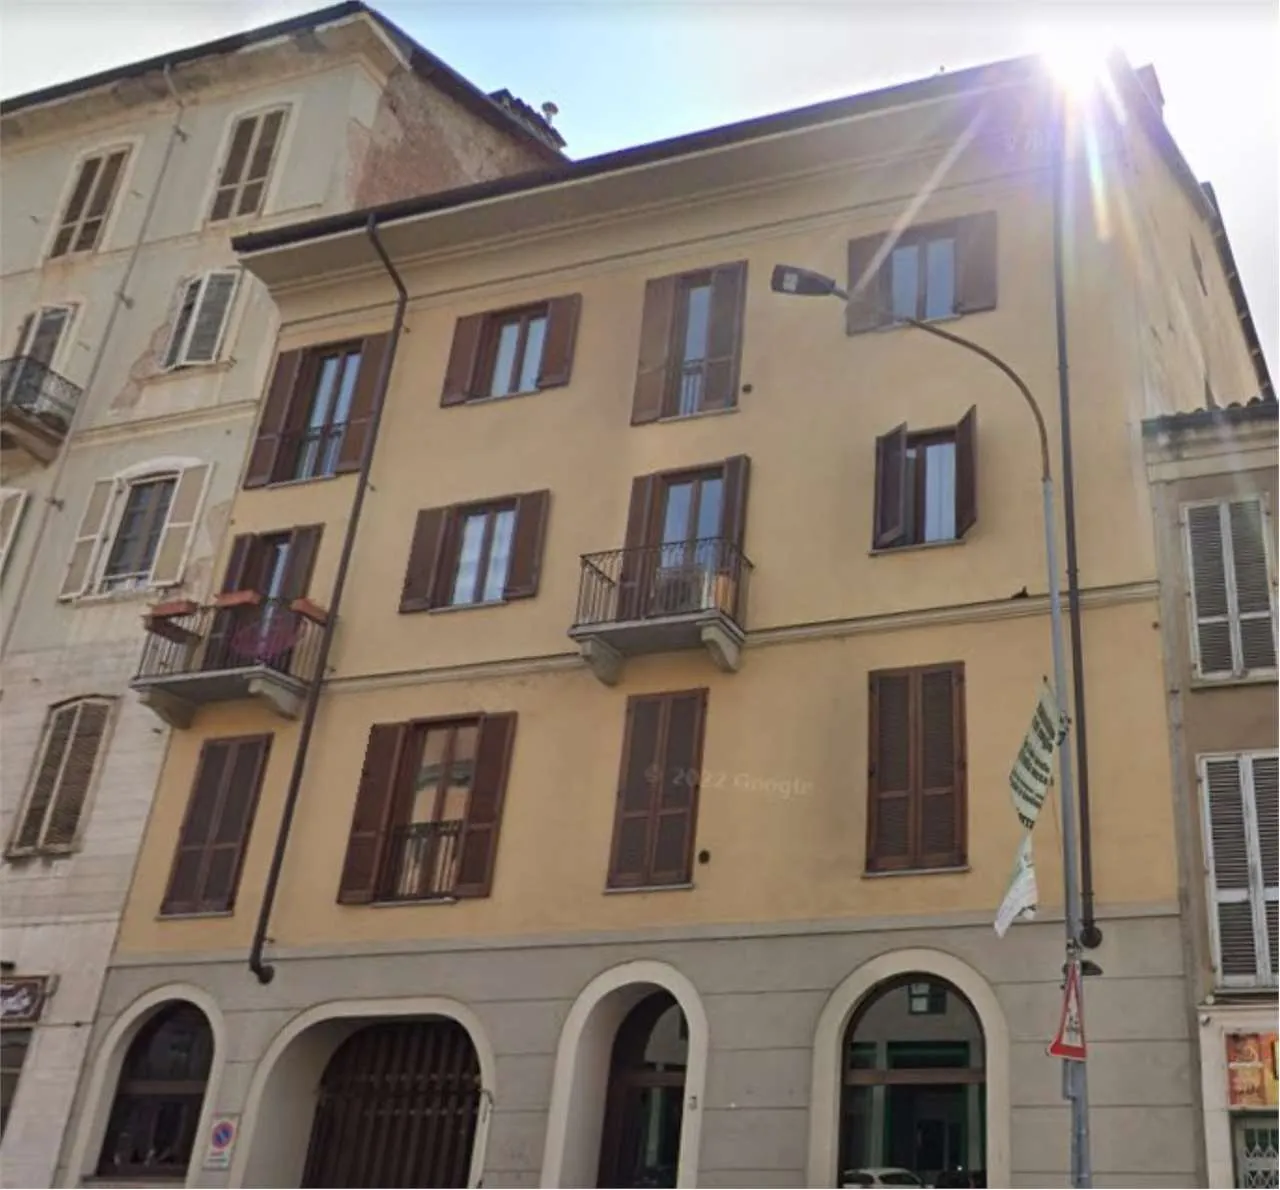 Immagine per Appartamento in asta a Torino corso Emilia 3